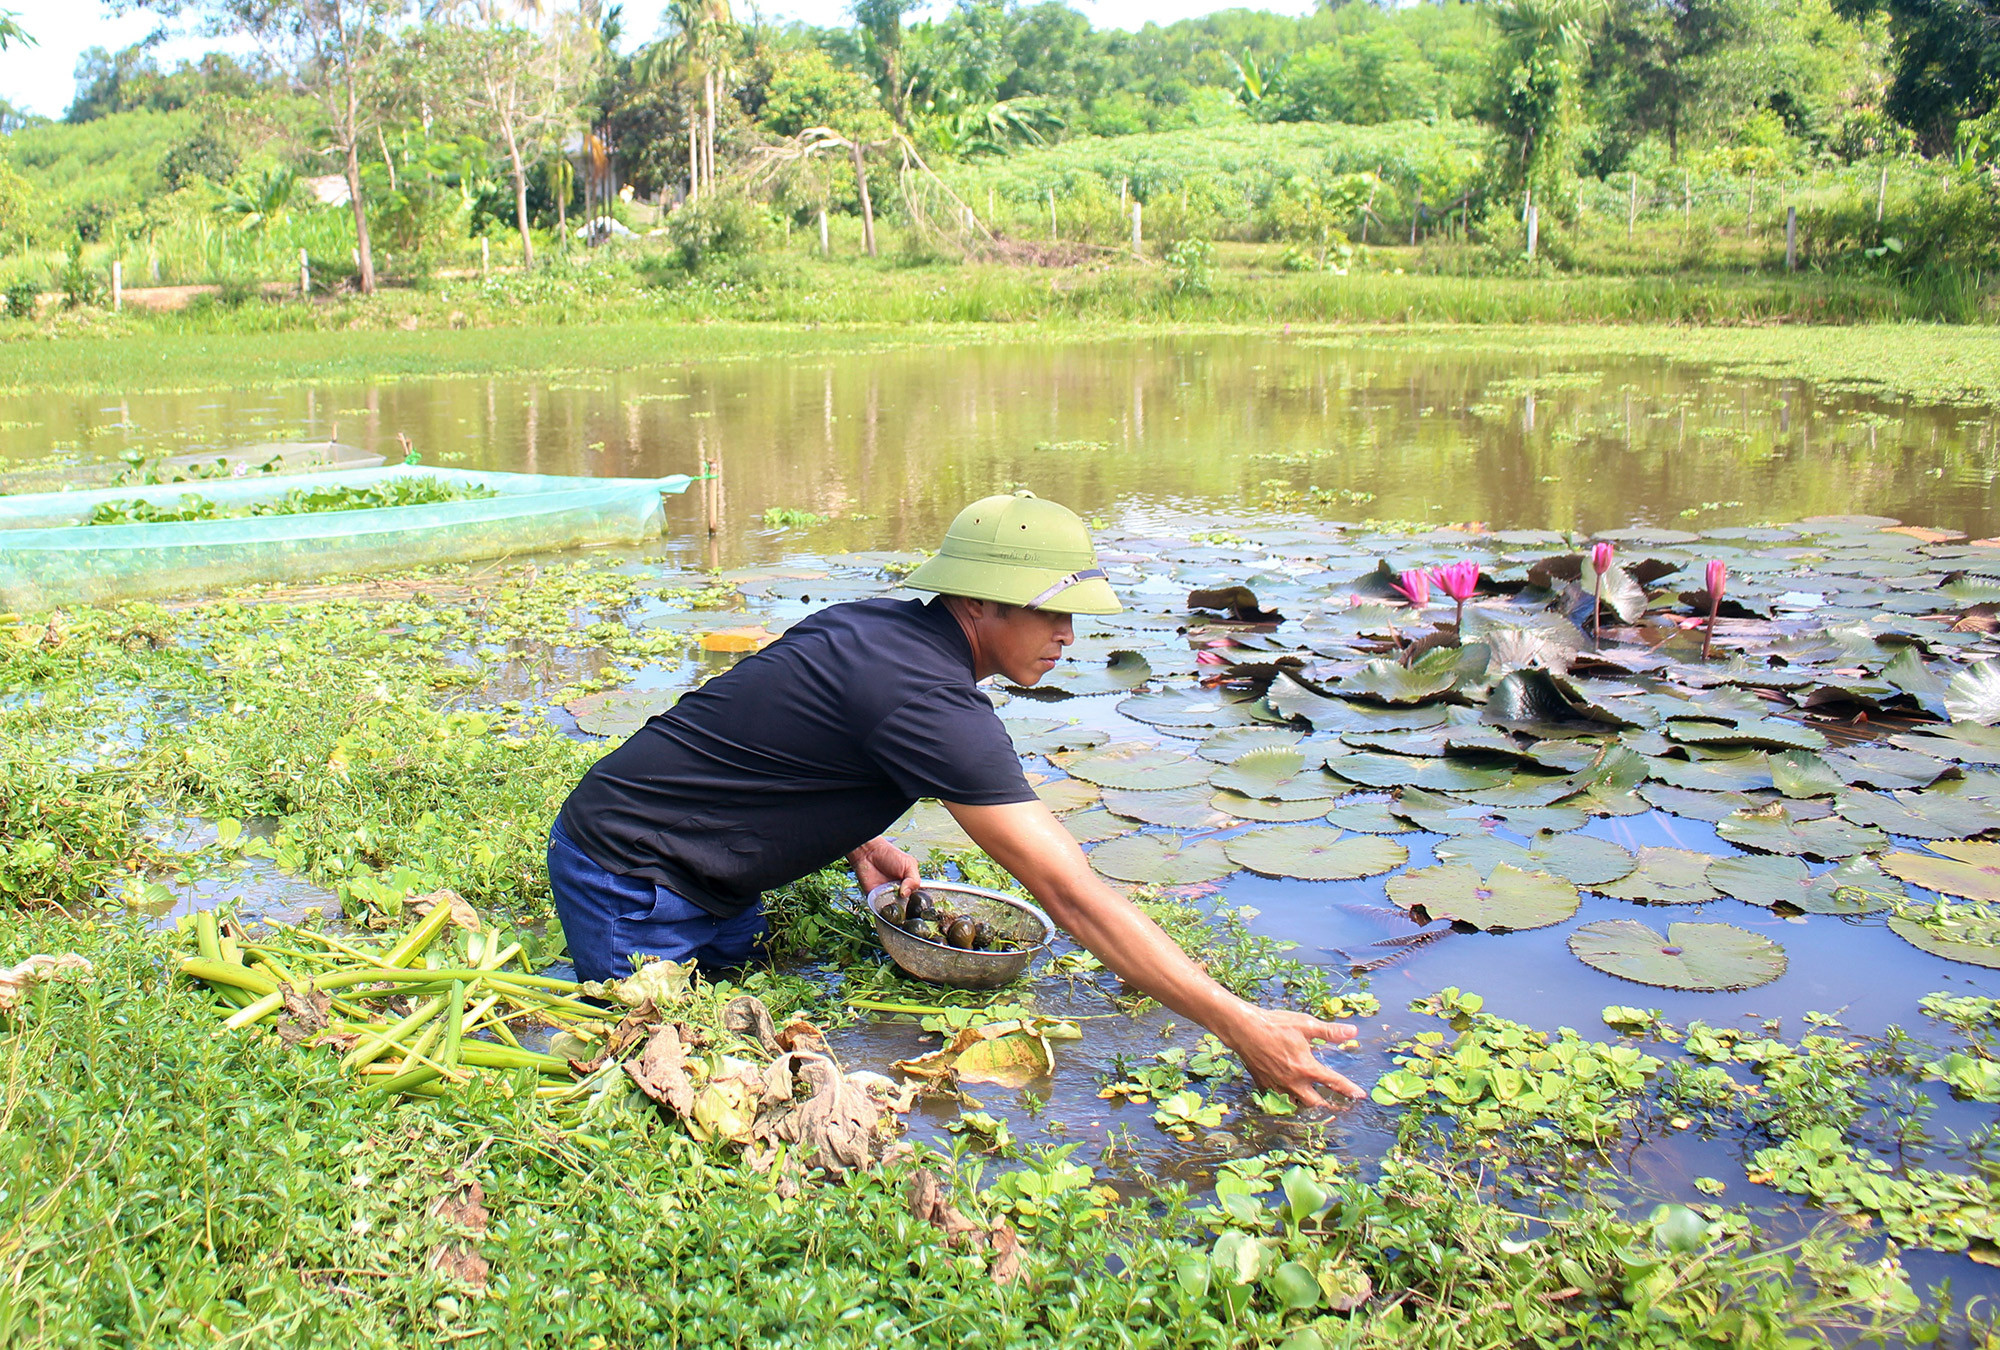 Mô hình nuôi ốc bươu đen của gia đình anh Nguyễn Văn Đức thôn 4 xã Tào Sơn là một mô hình kinh tế mới, cho thu nhập cao tại địa phương. Ảnh: Thái Hiền